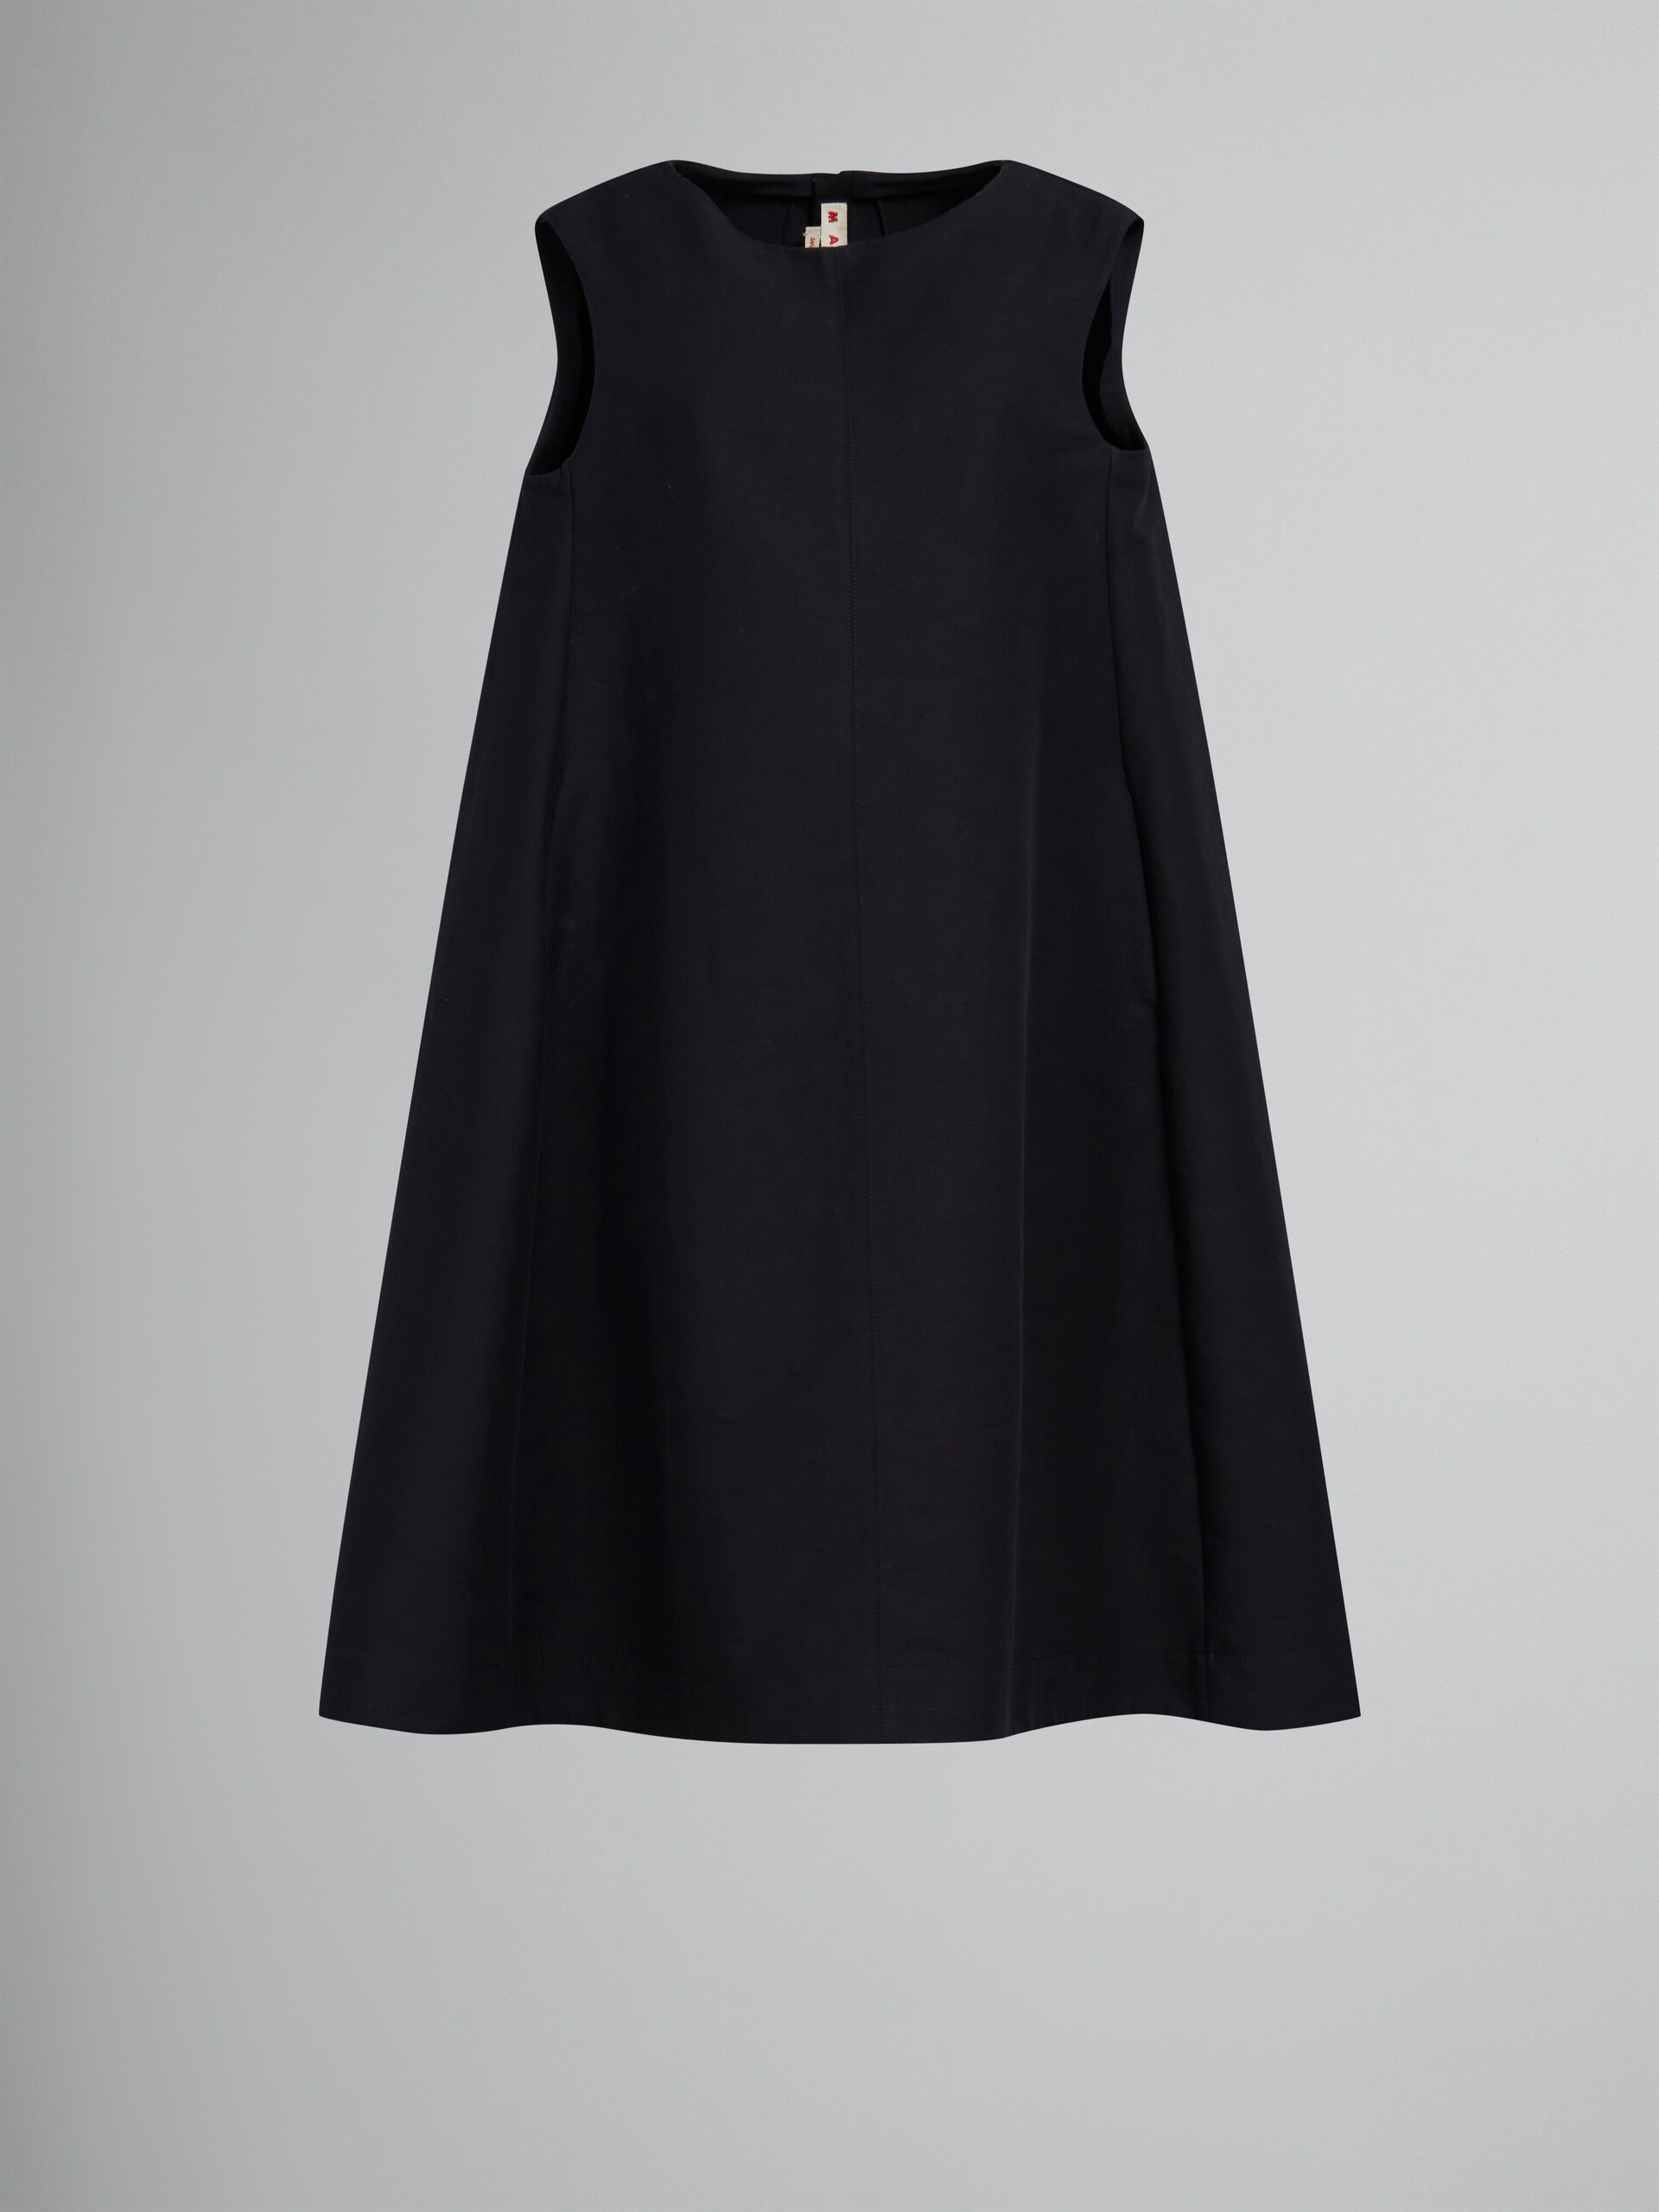 블랙 코튼 캐디 코쿤 드레스 - 드레스 - Image 1